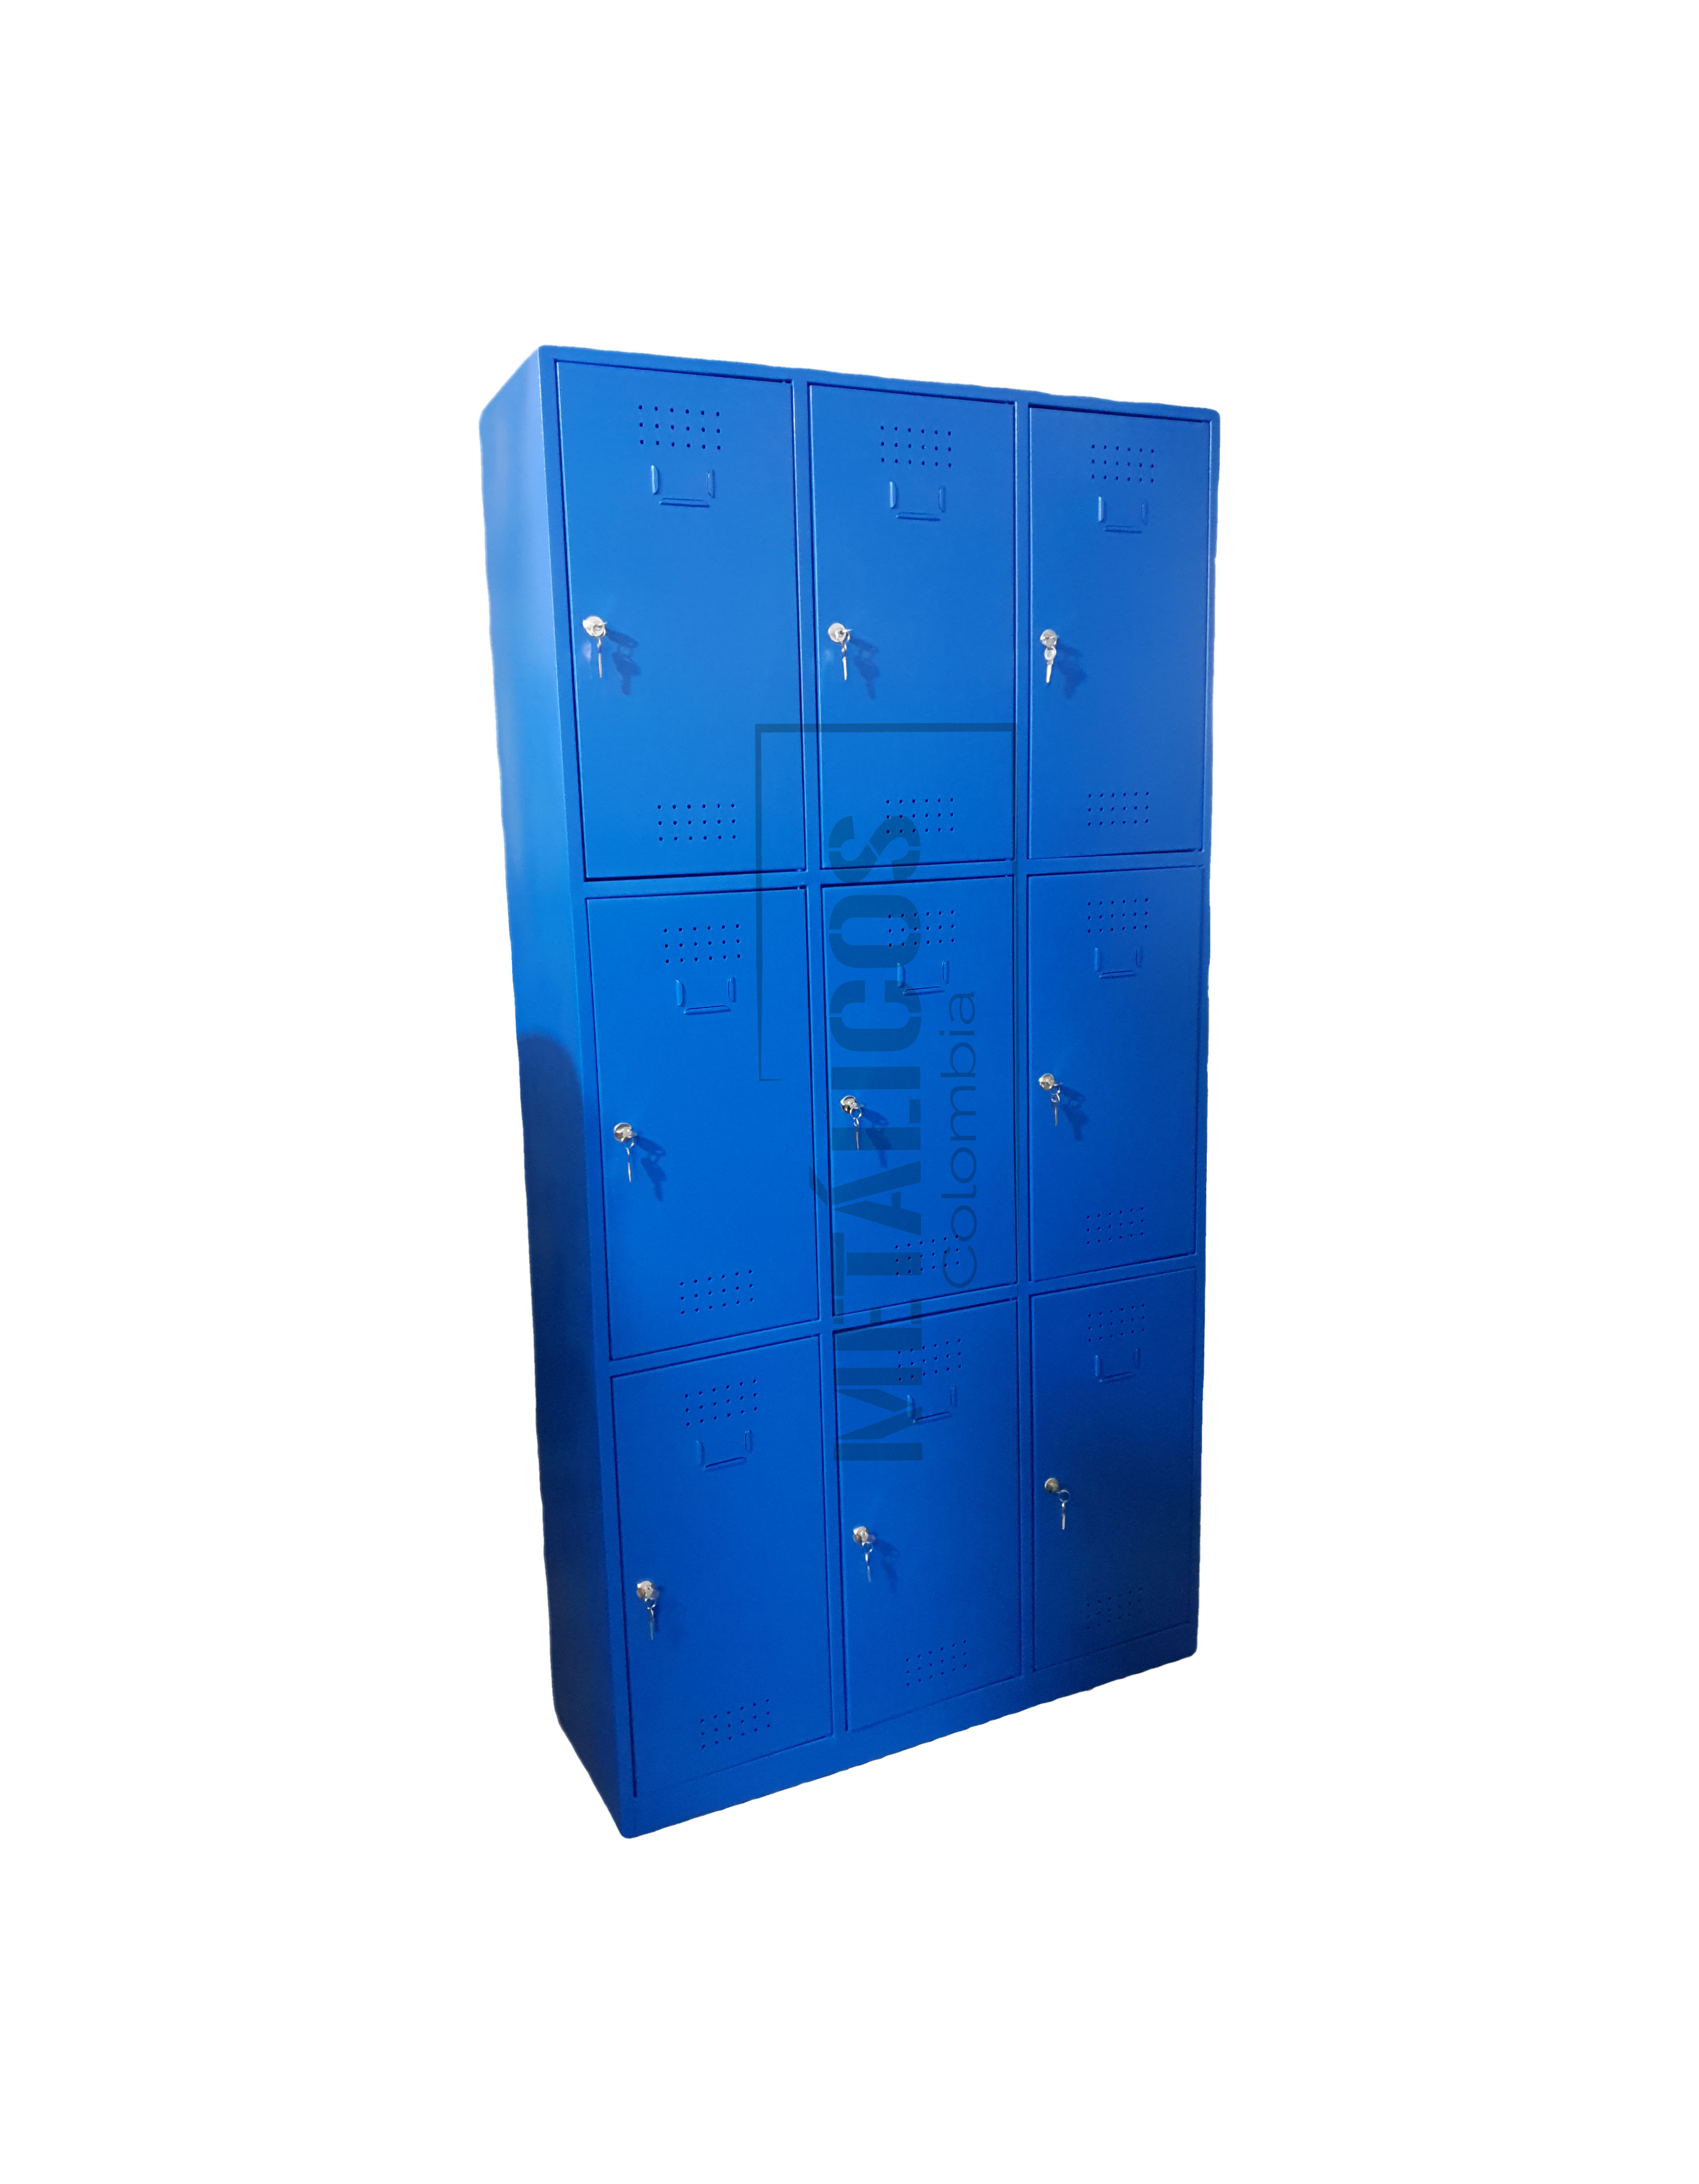 locker metalico con seguridad